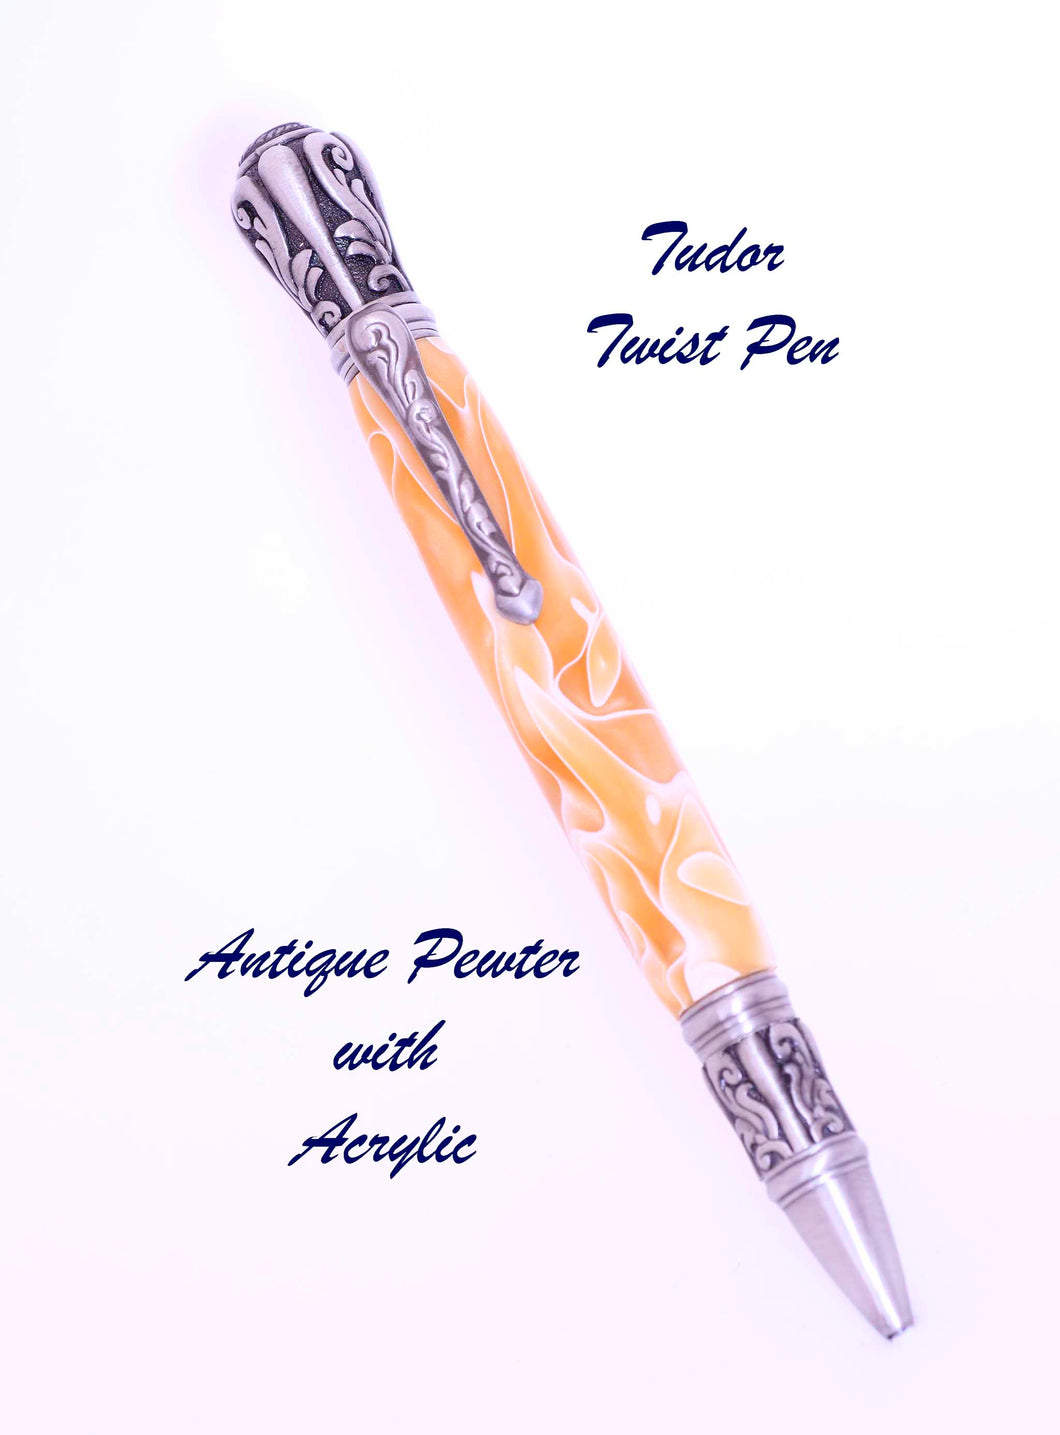 Tudor Twist Pen